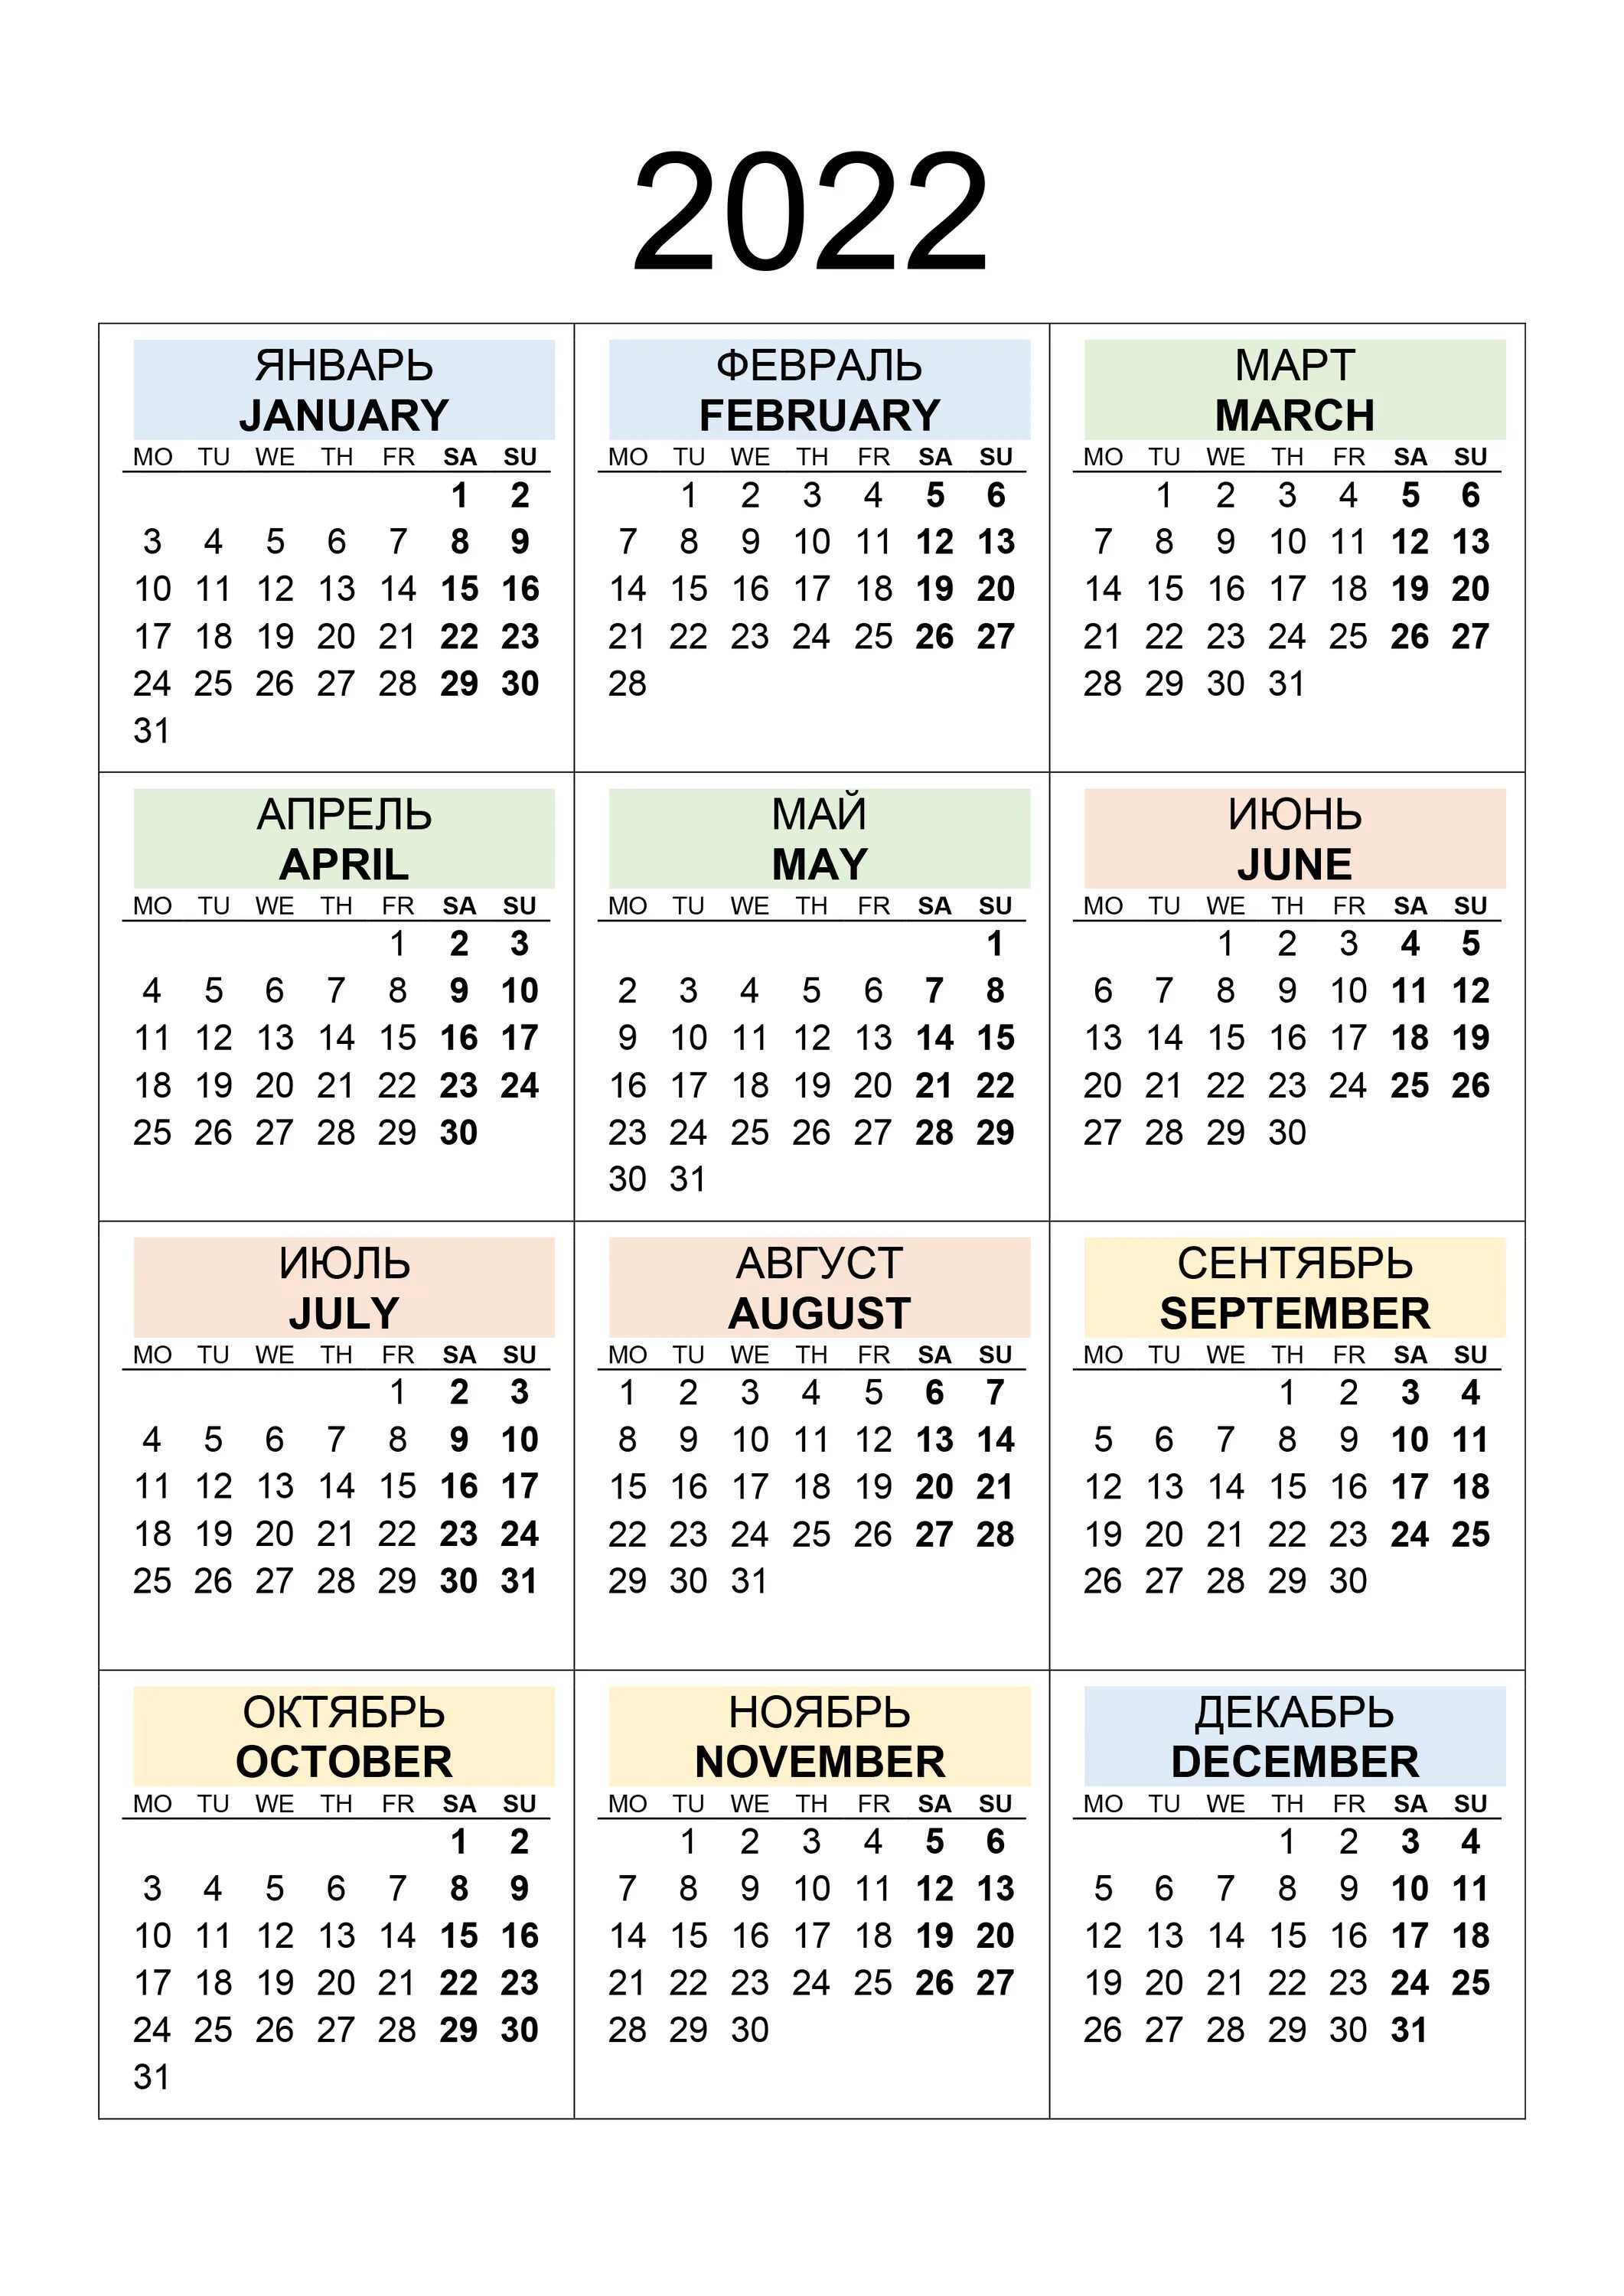 Календарь на 2022 год дни недели сбоку. Календарь 2022 с праздниками и выходными. Календарь на 2022 год выходные снизу. Календарь на английском.